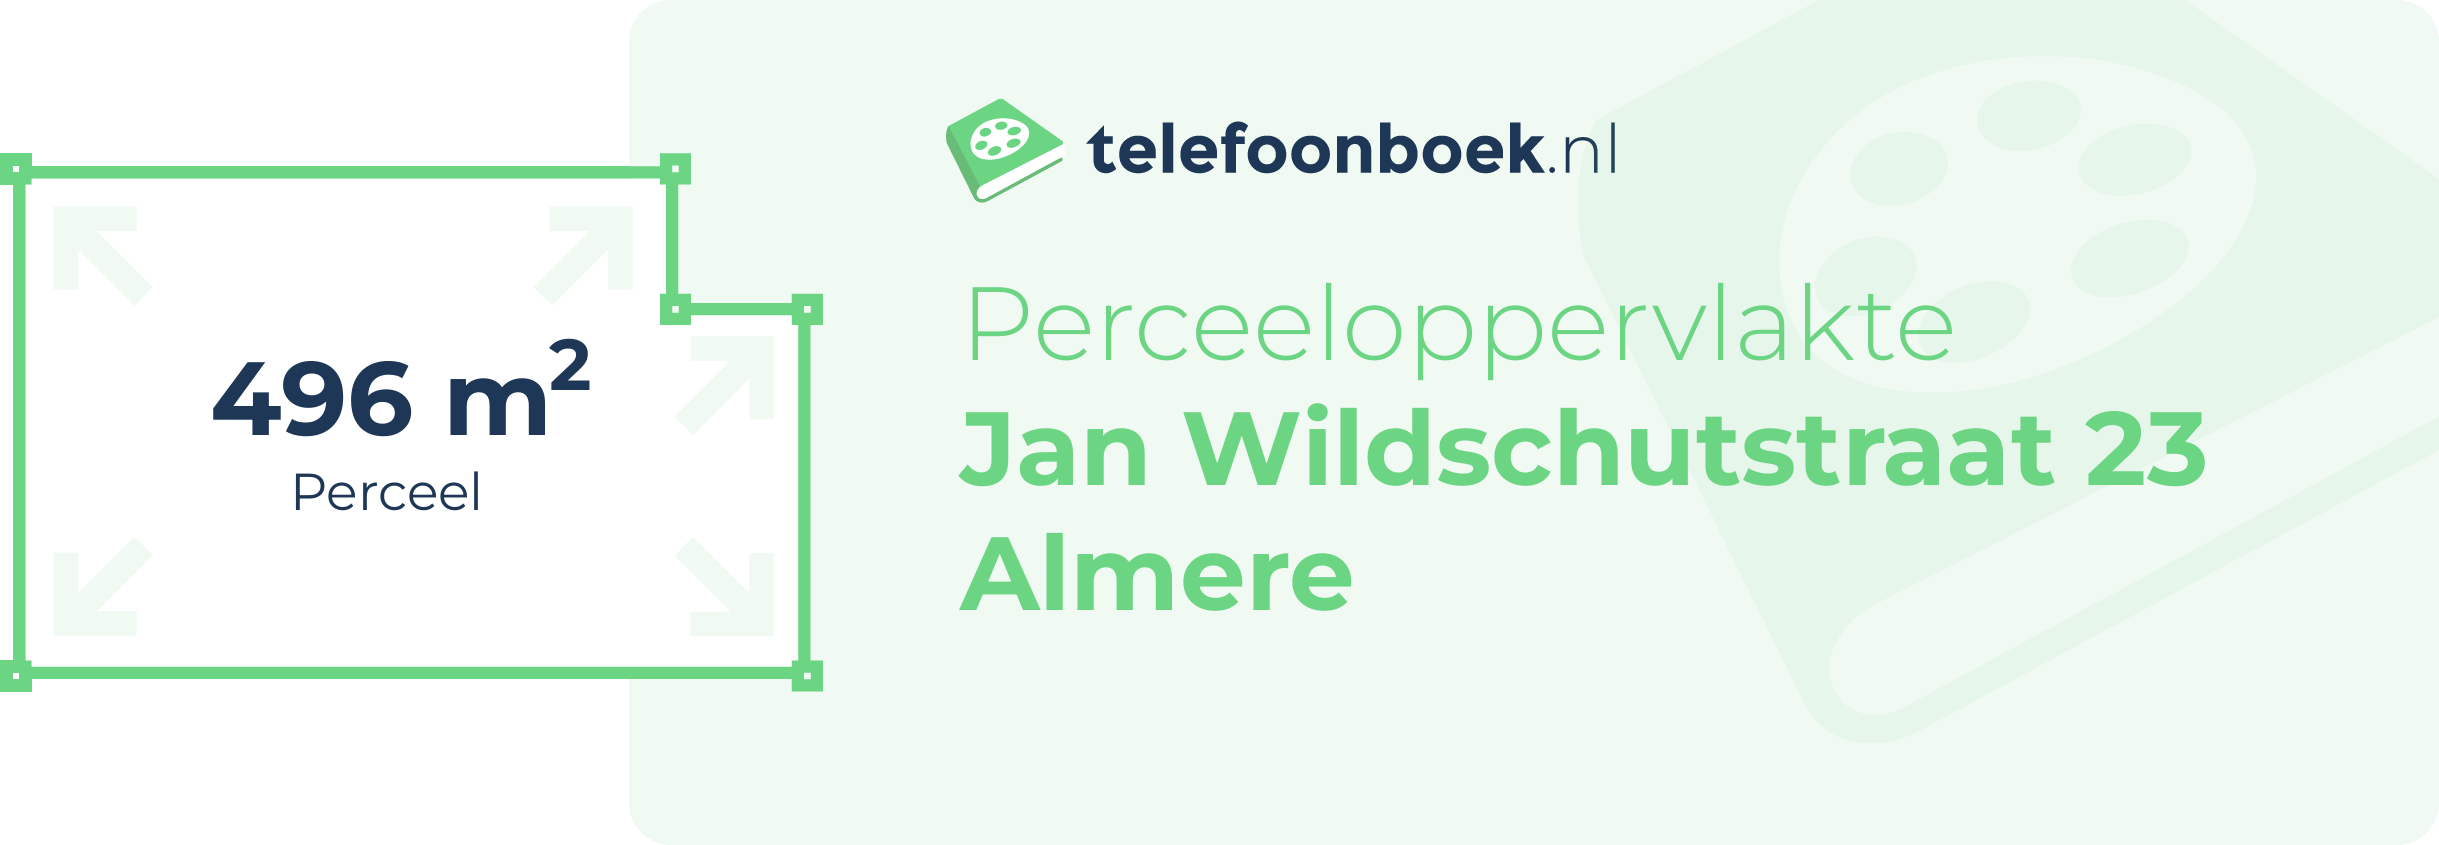 Perceeloppervlakte Jan Wildschutstraat 23 Almere